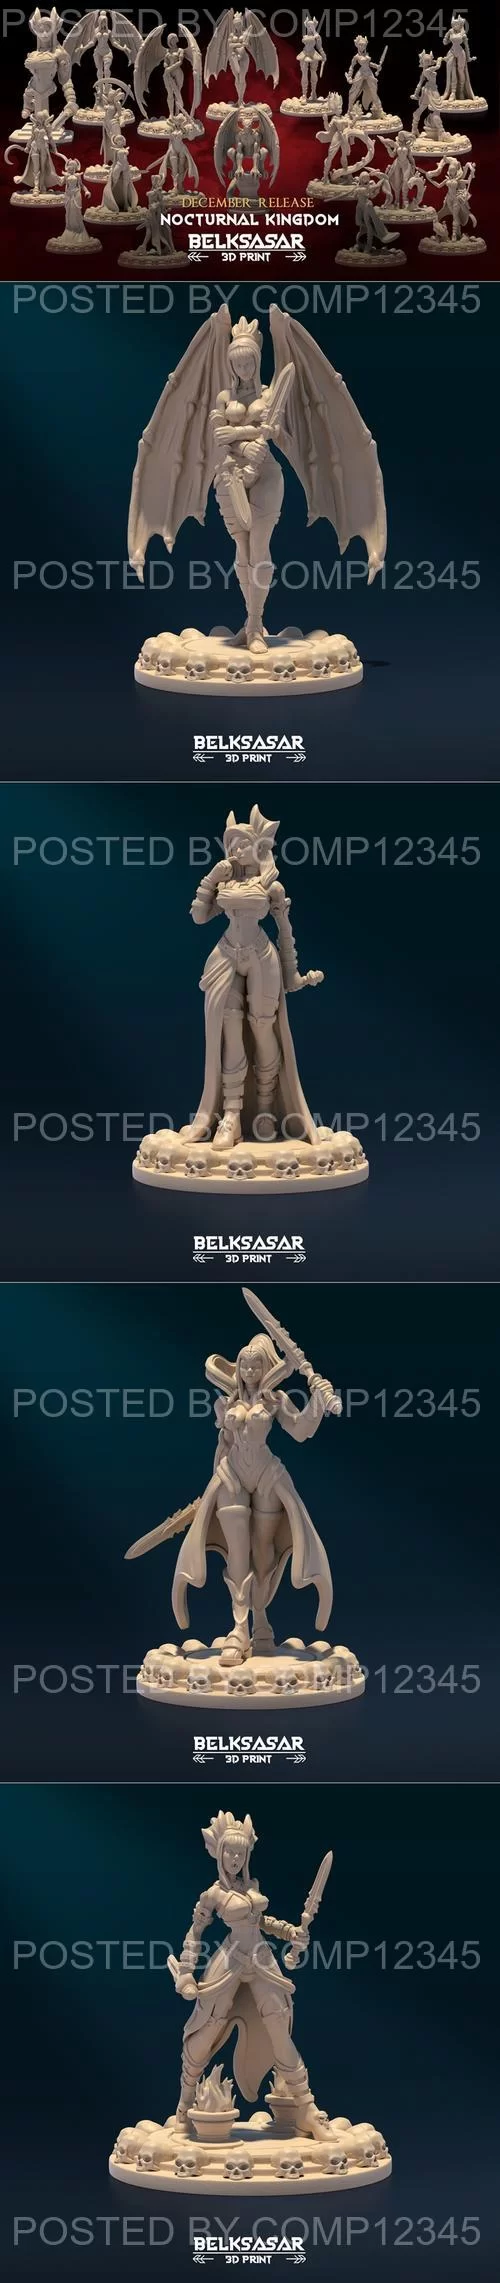 Belksasar - Nocturnal Kingdom December 2022 3D Print